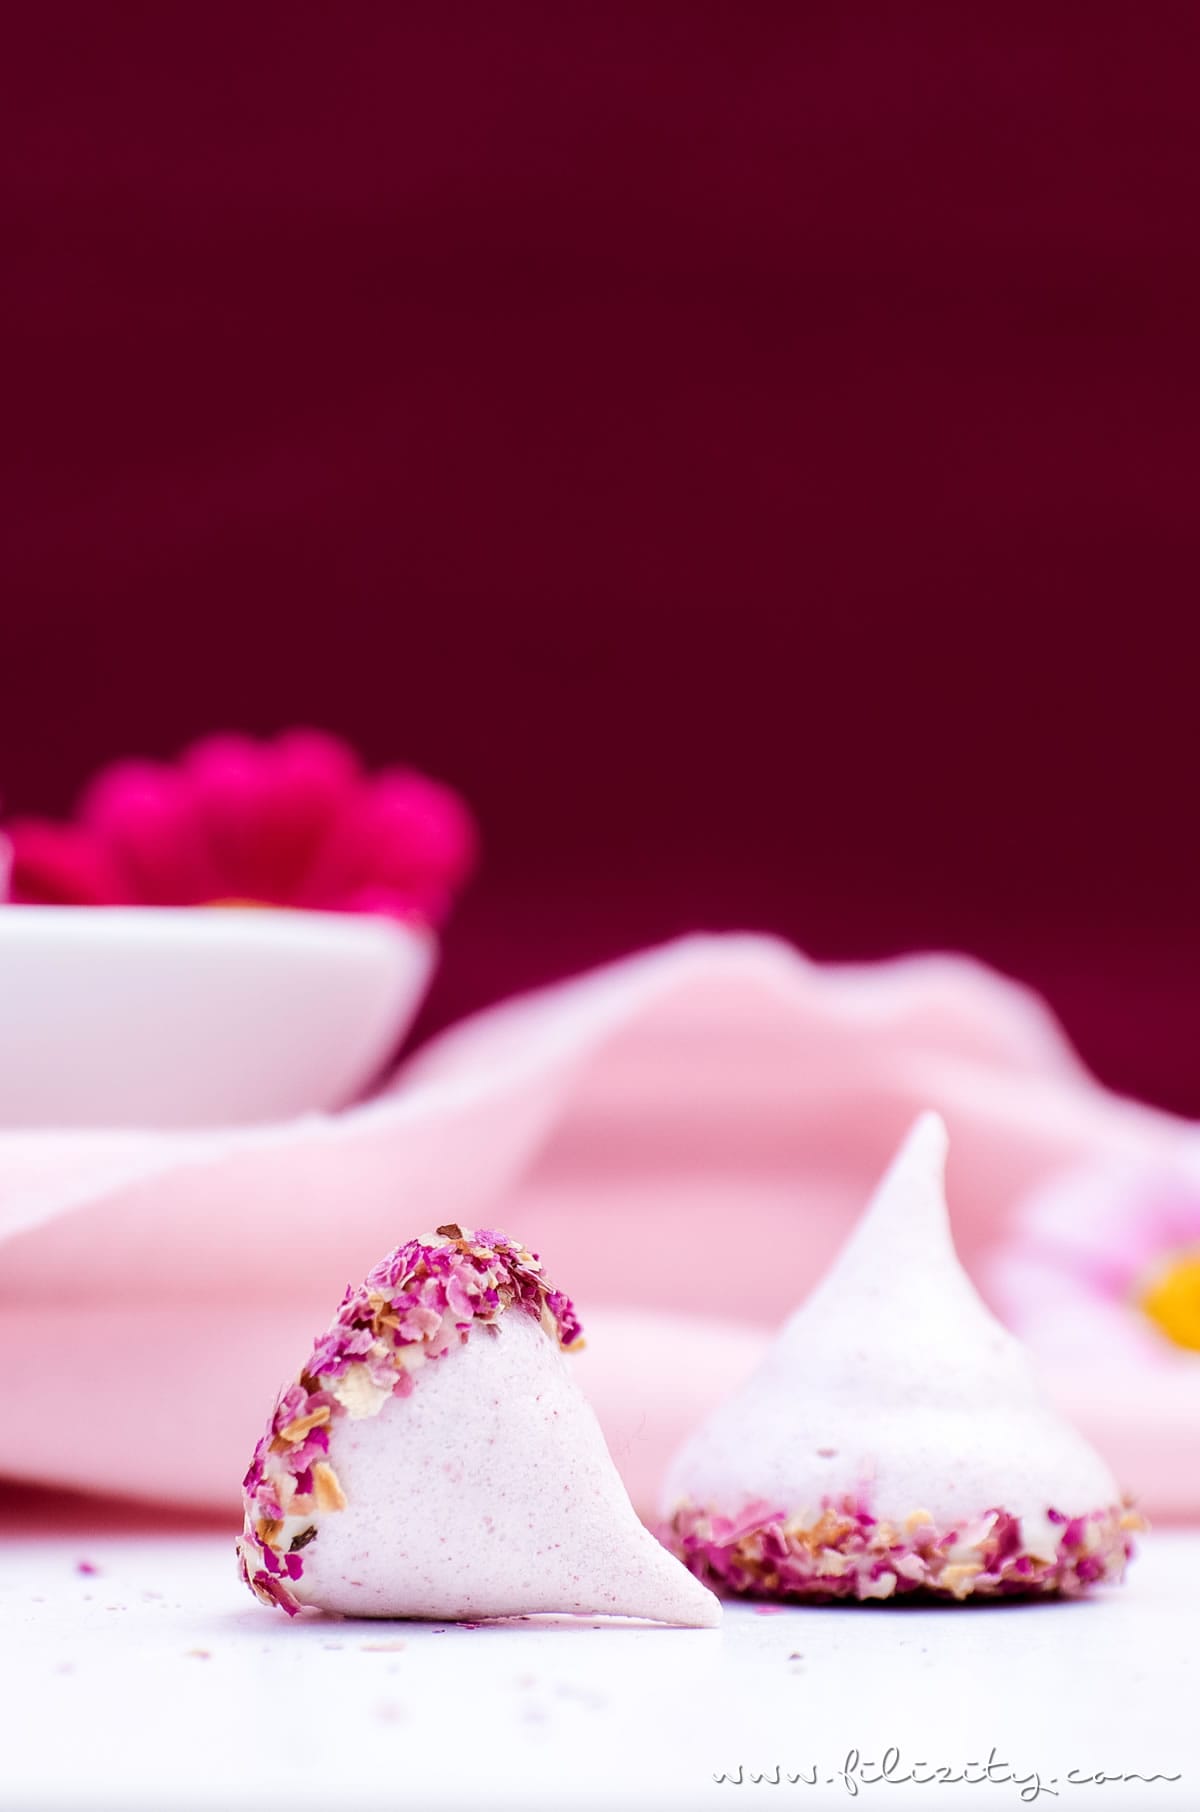 Himbeer-Baiser mit Rosen - Liebesbotschaft aus der Küche | Baiser-Rezept mit Himbeeren, weißer Schokolade und Rosen | Filizity.com | Food-Blog aus dem Rheinland #muttertag #geschenkidee #valentinstag